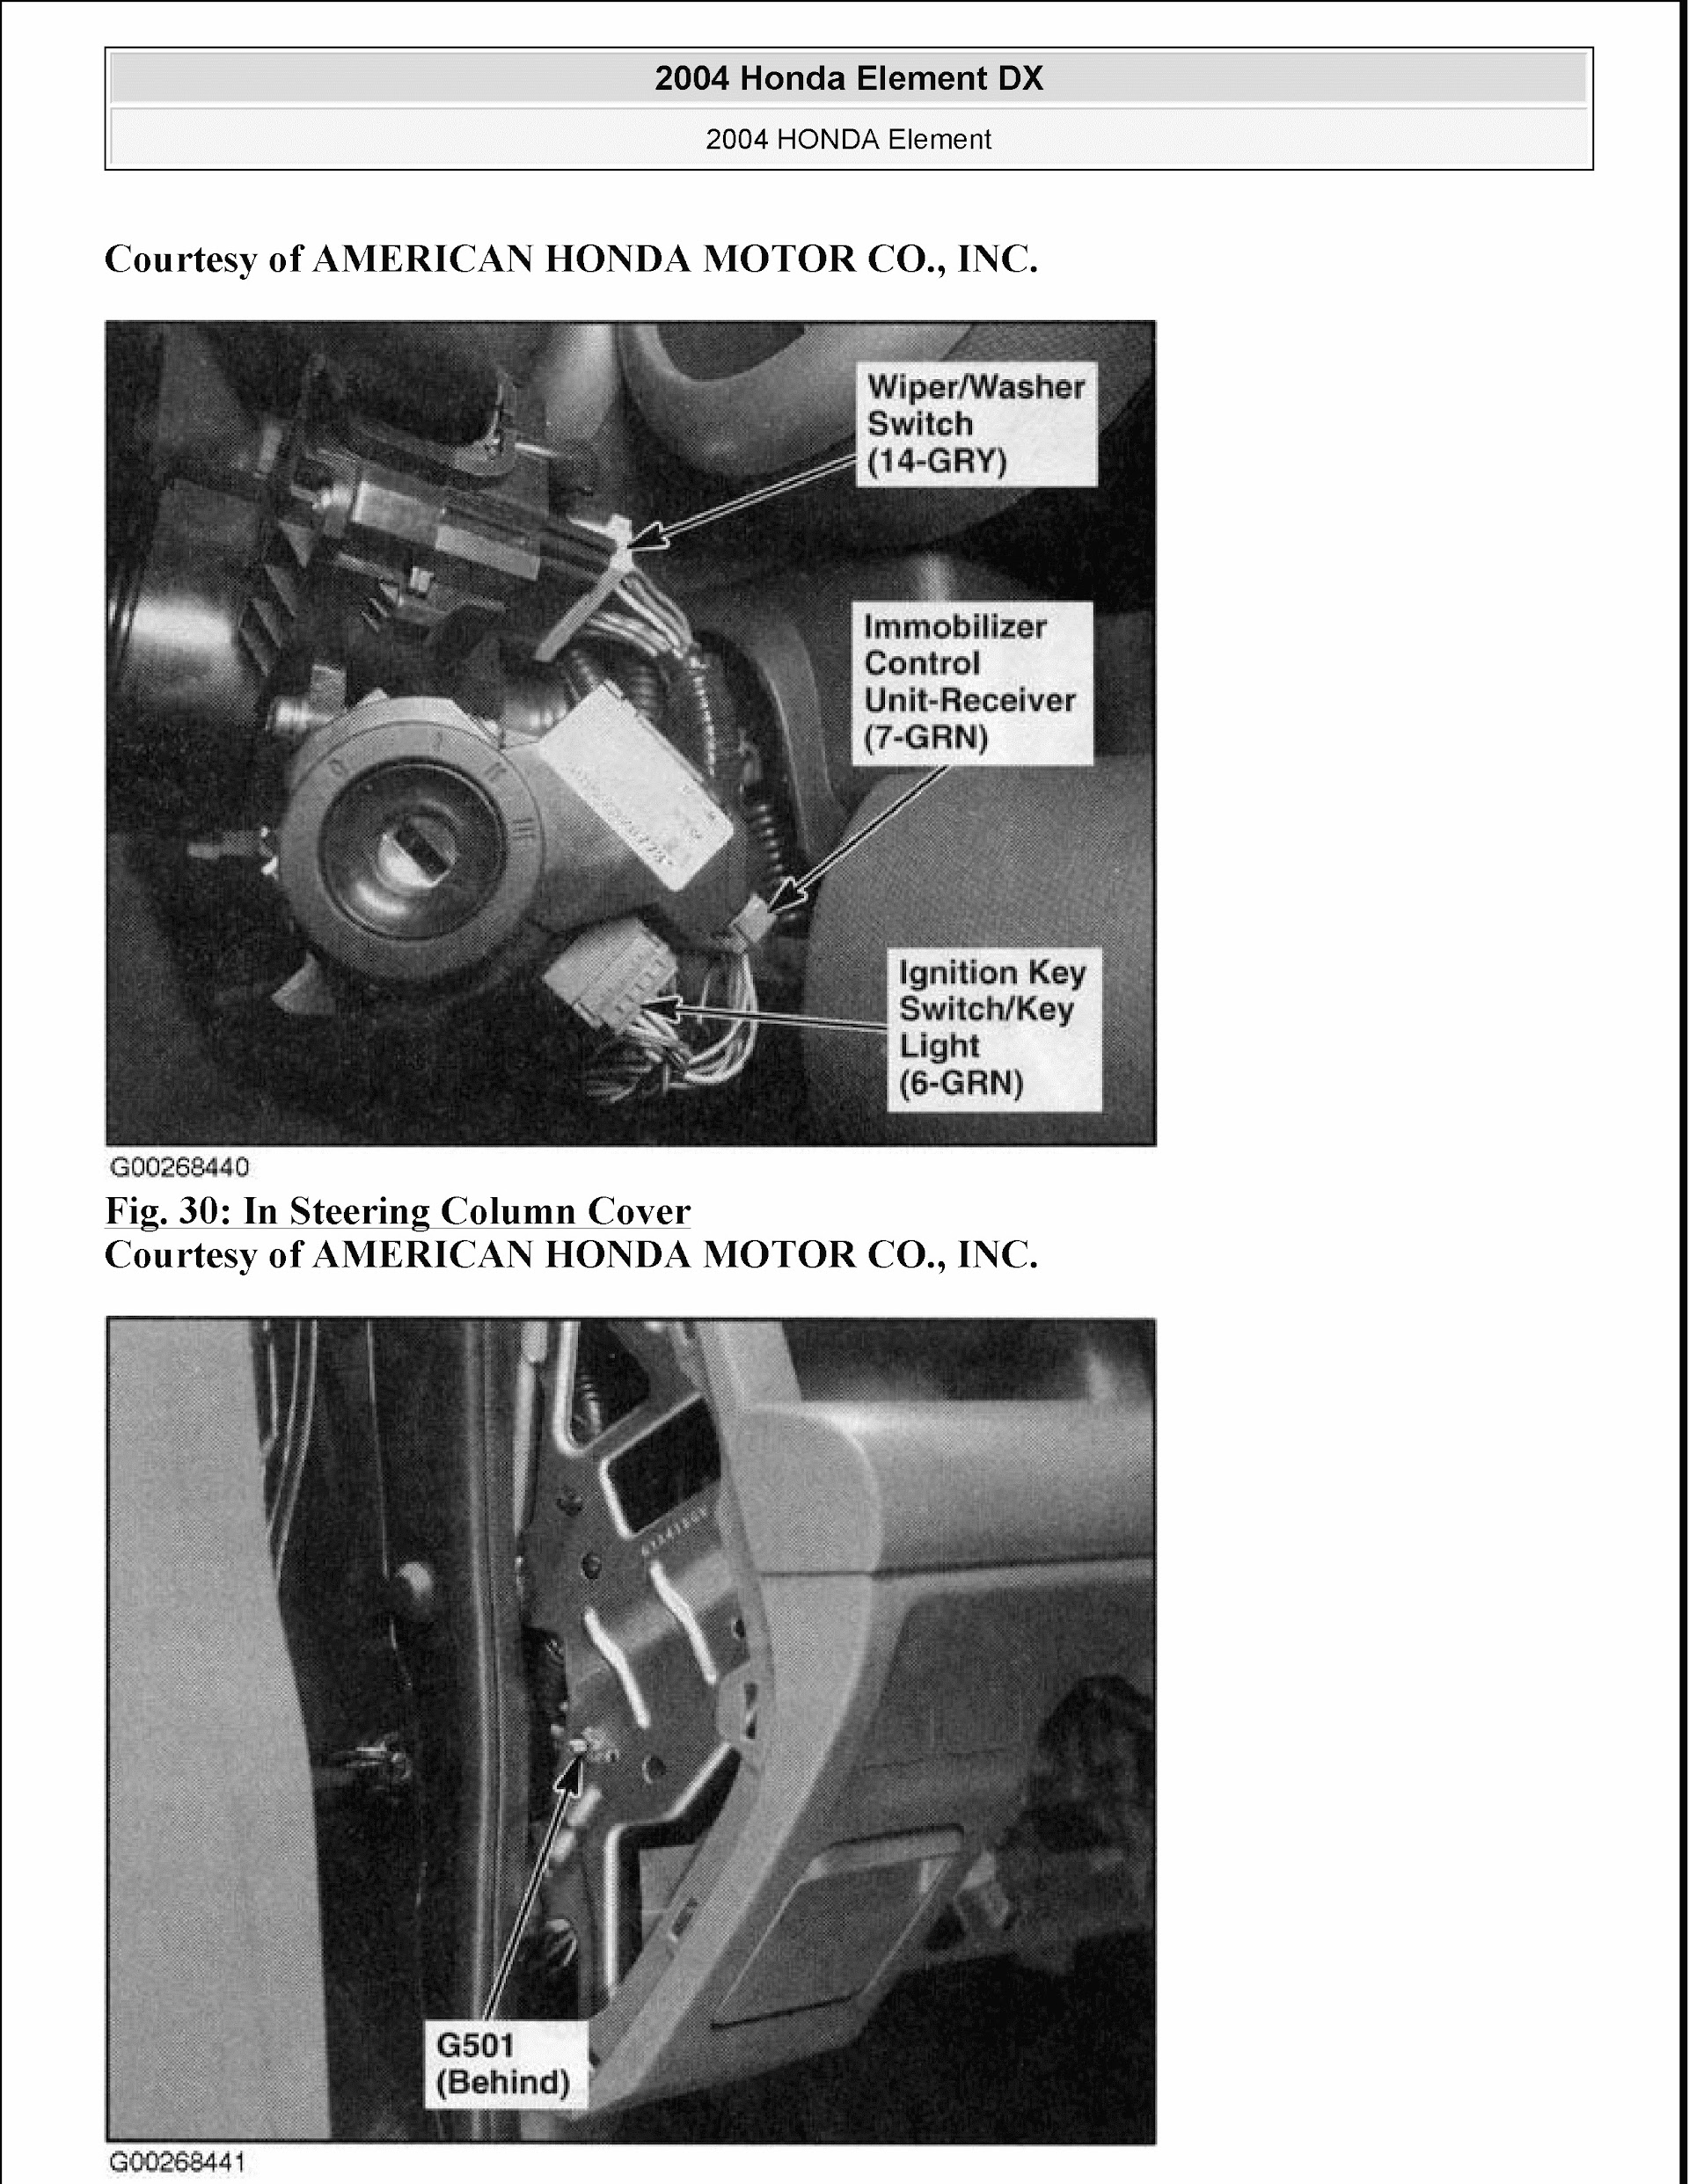 2008 Honda Element Repair Manual, Steering Column